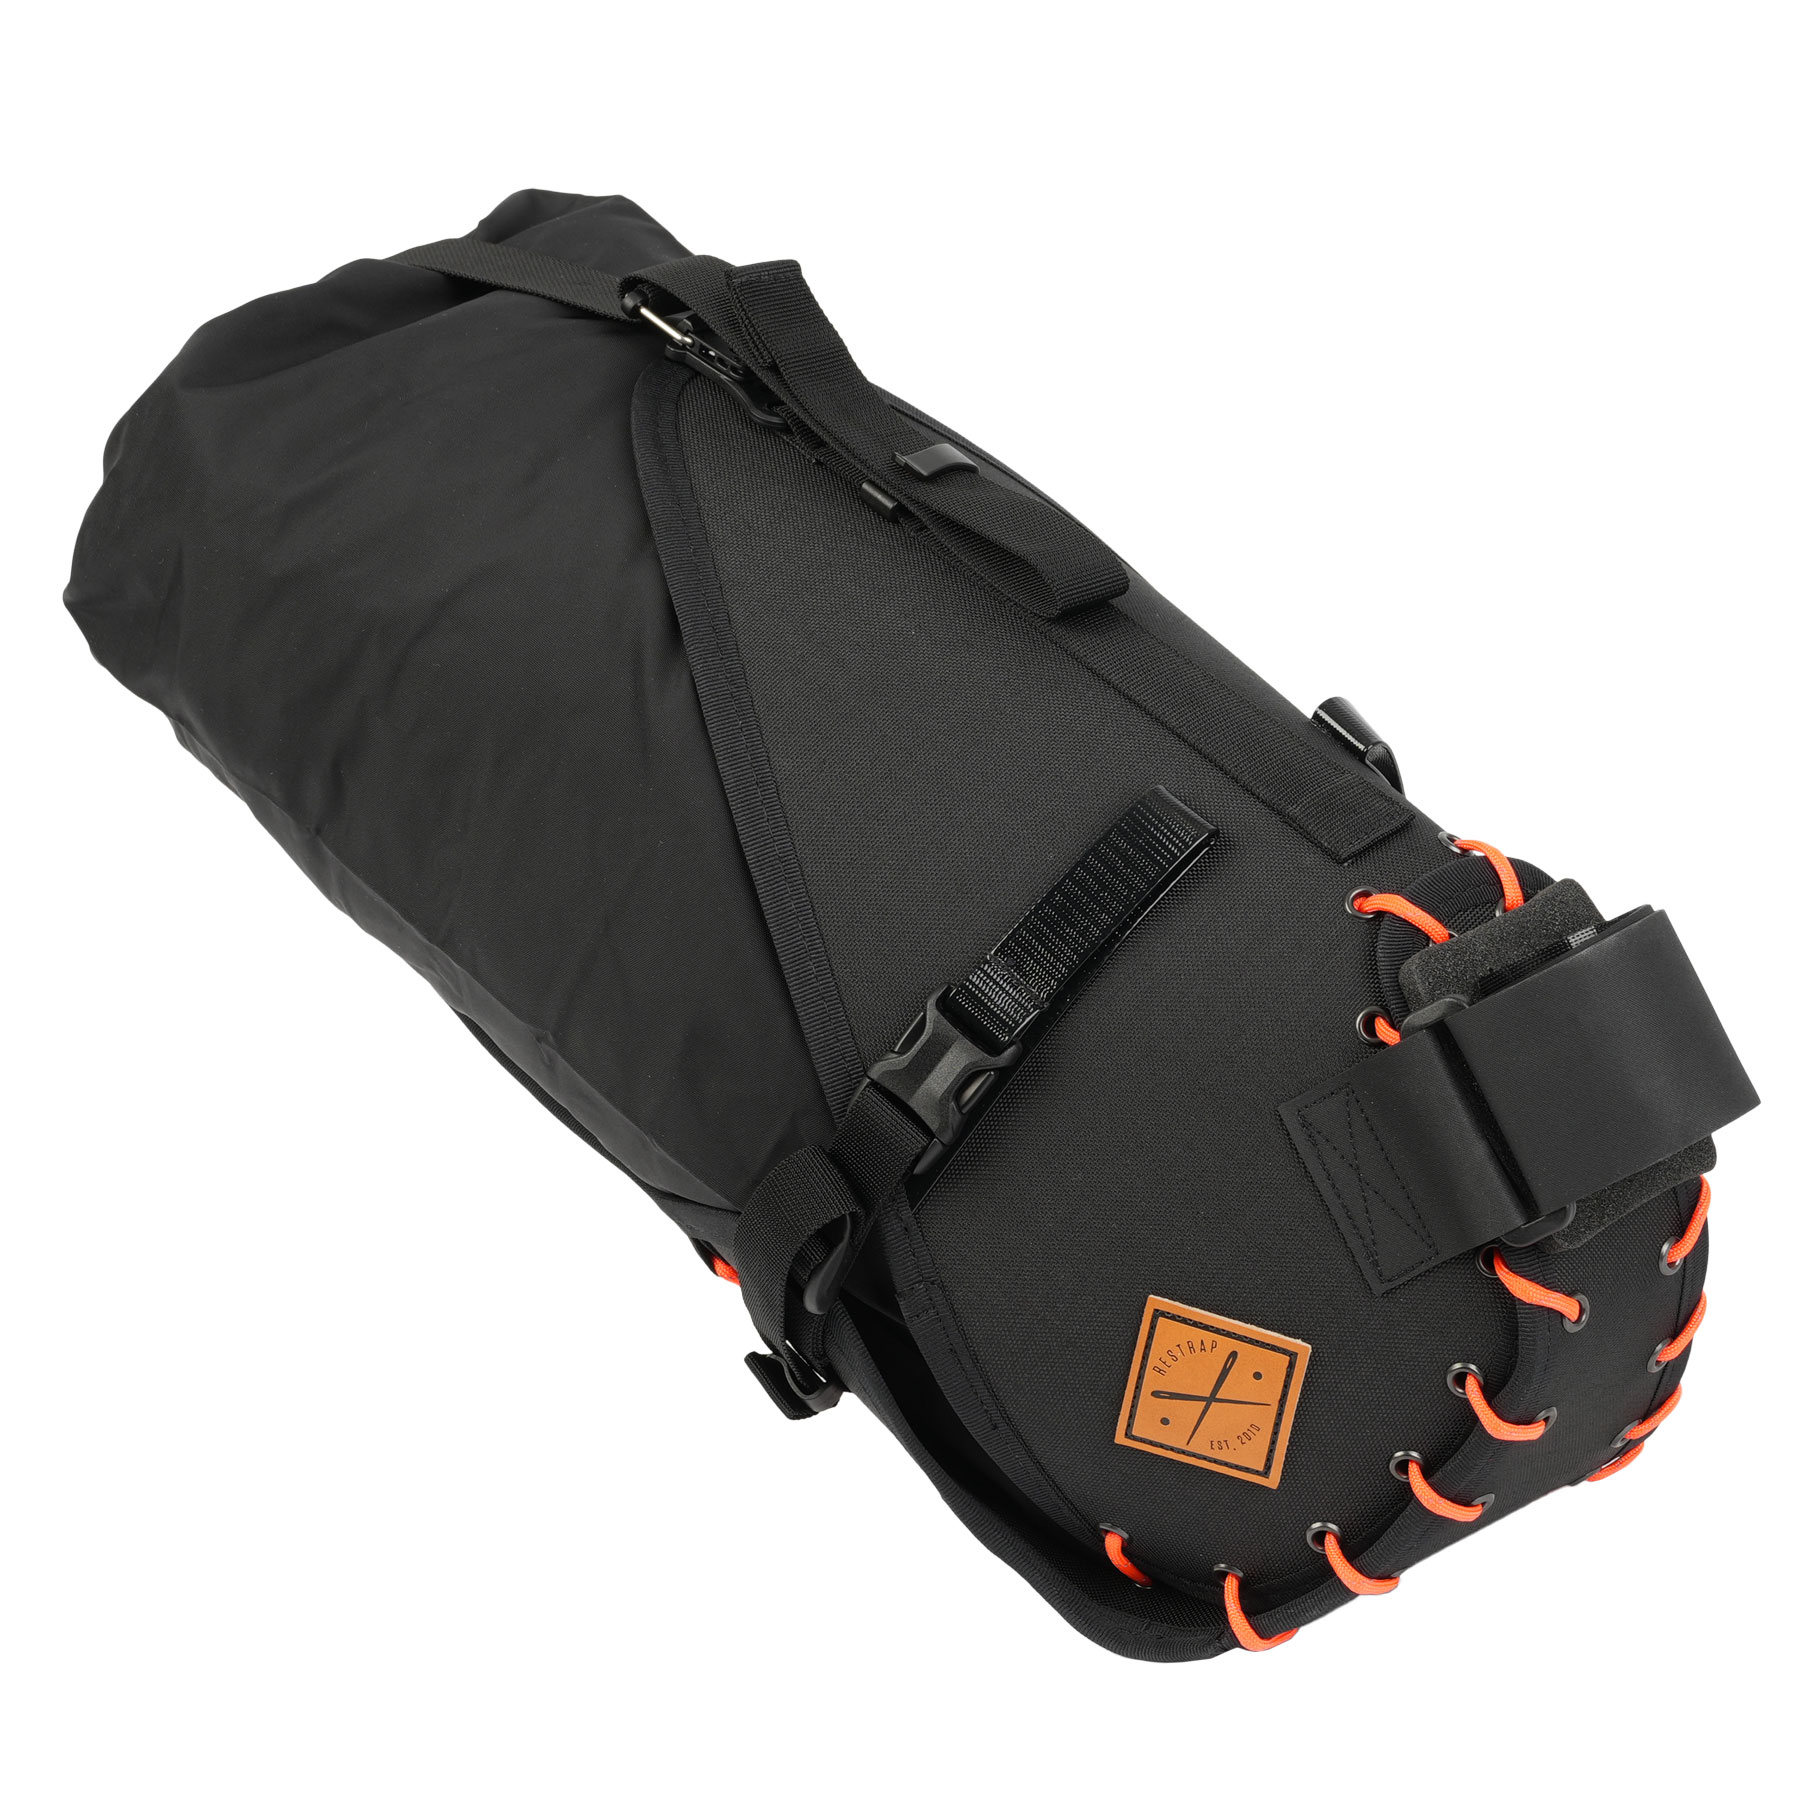 Produktbild von Restrap 14L Satteltasche mit Packsack - schwarz/orange